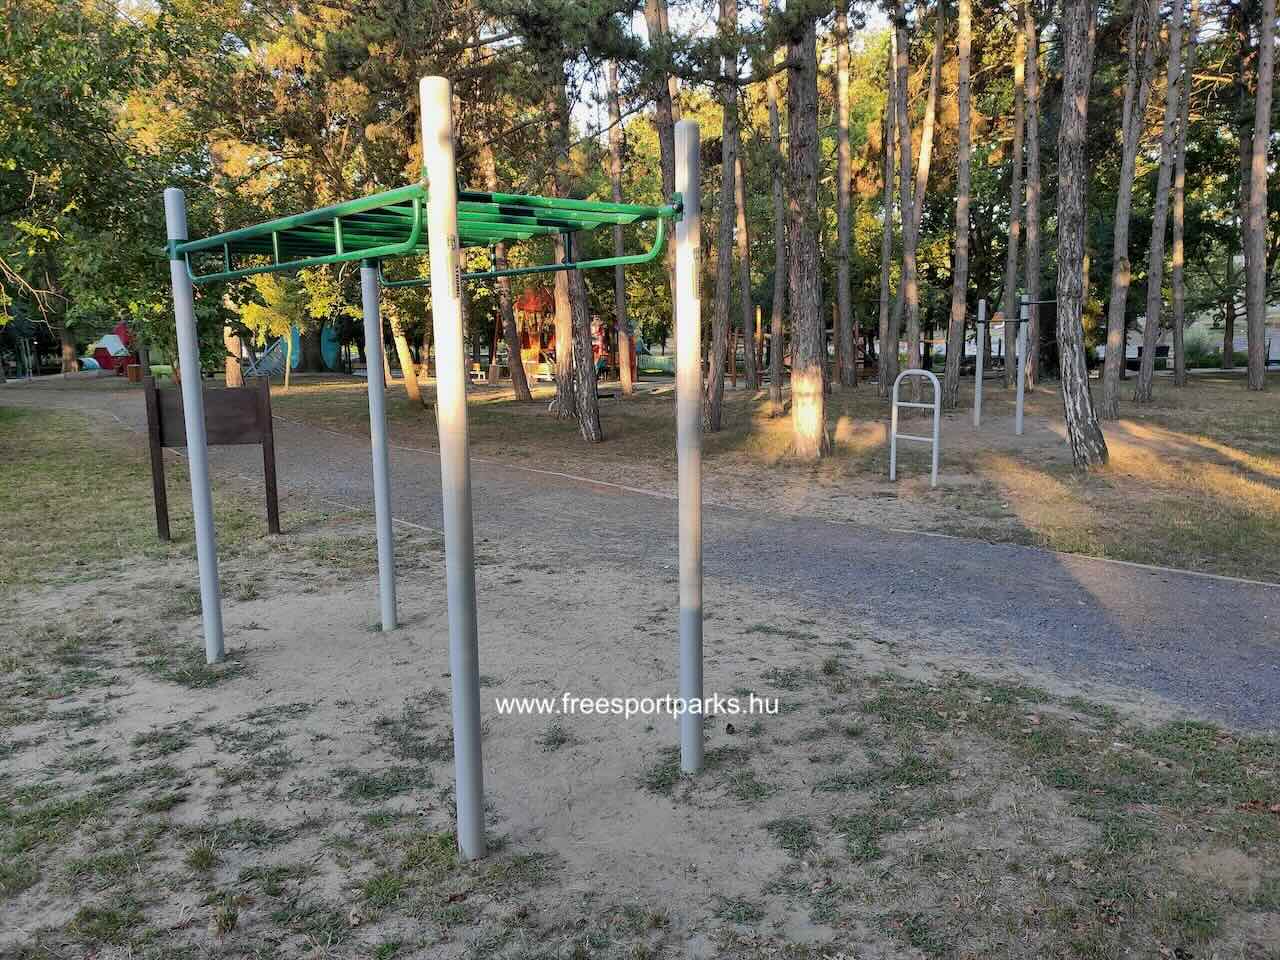 Street Workout Park eszközei, Nagyerdei park, Debrecen - Free Sport Parks Térkép